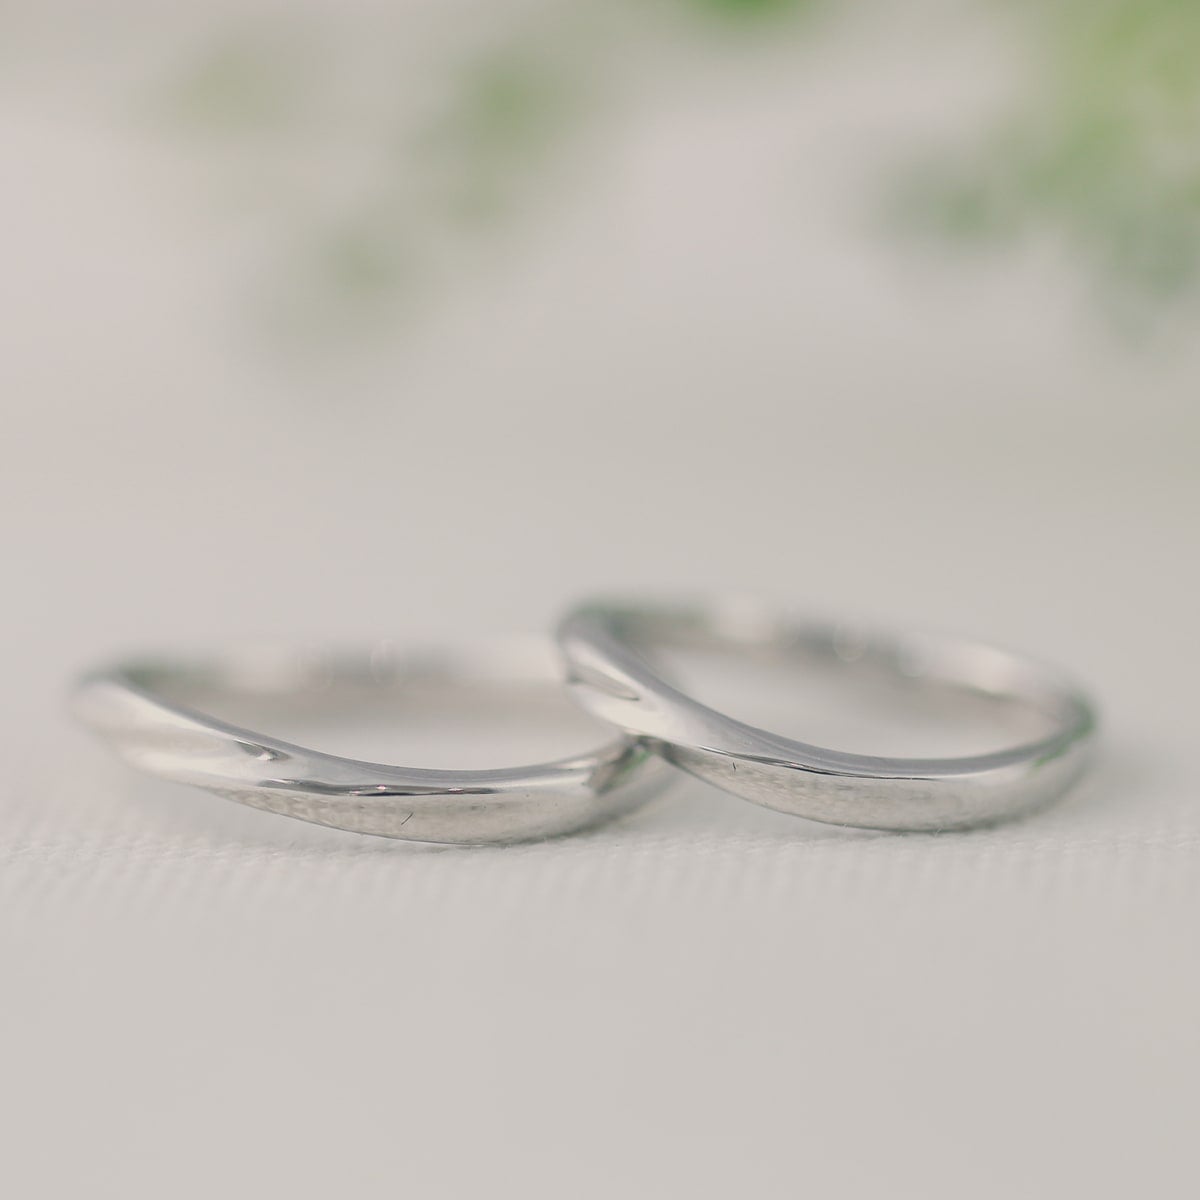 結婚指輪 2本セット | 30033-30032